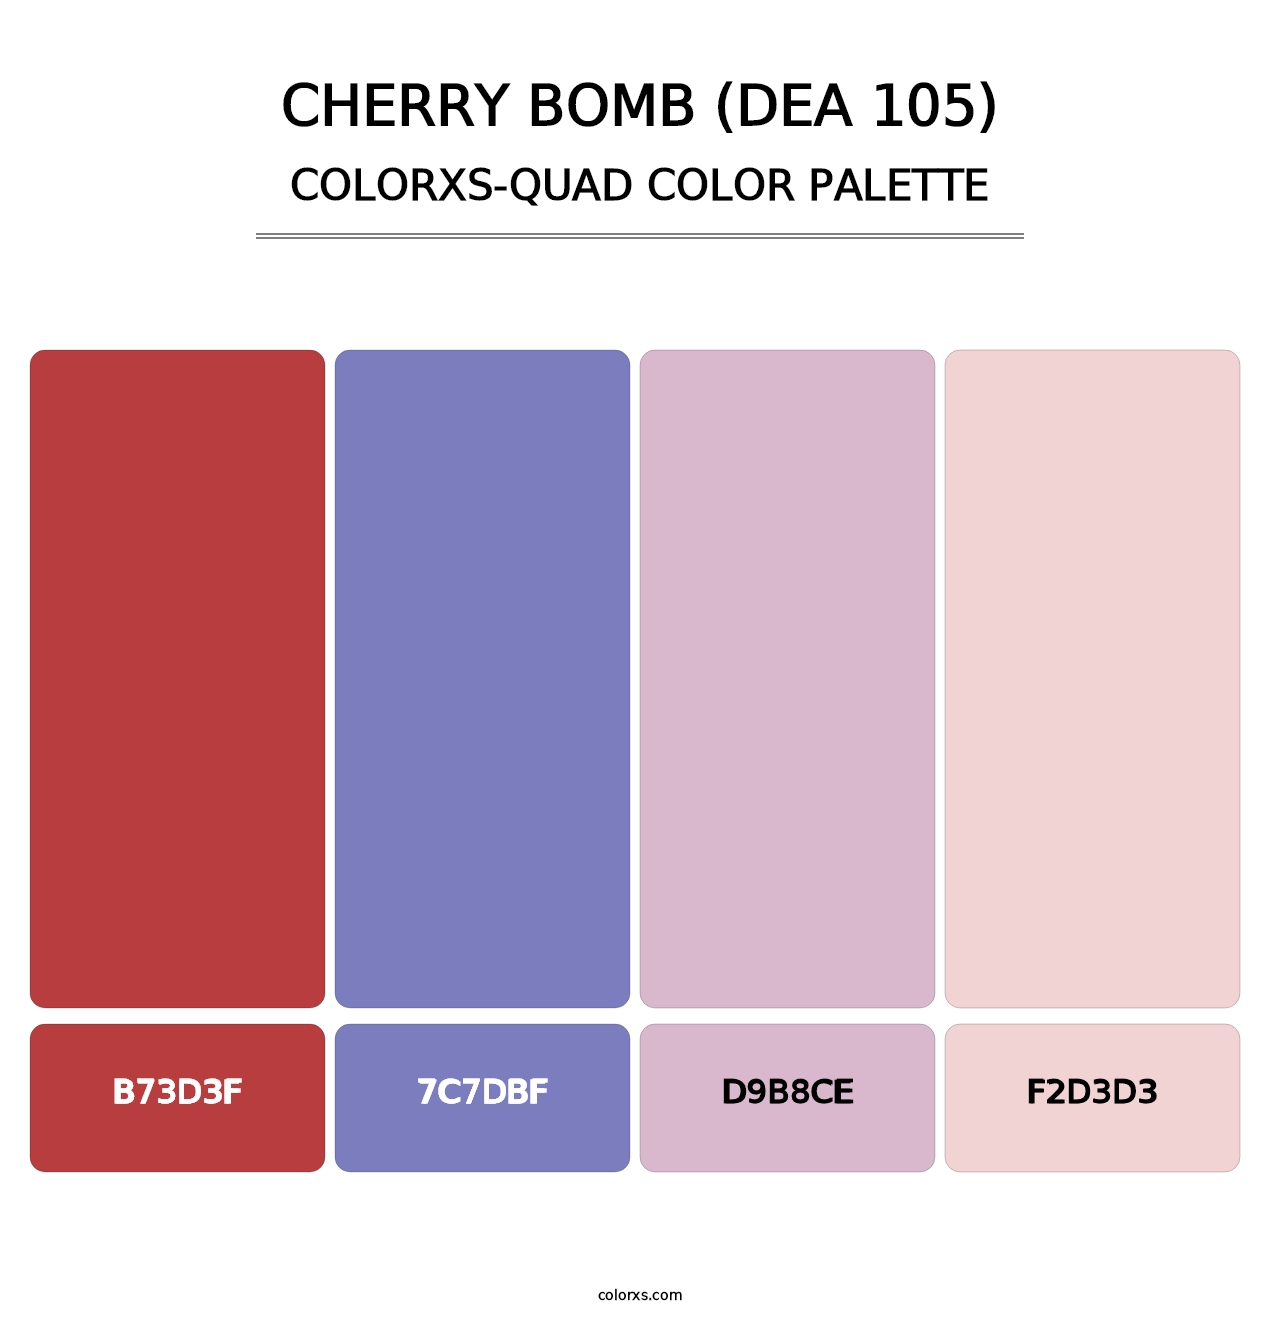 Cherry Bomb (DEA 105) - Colorxs Quad Palette